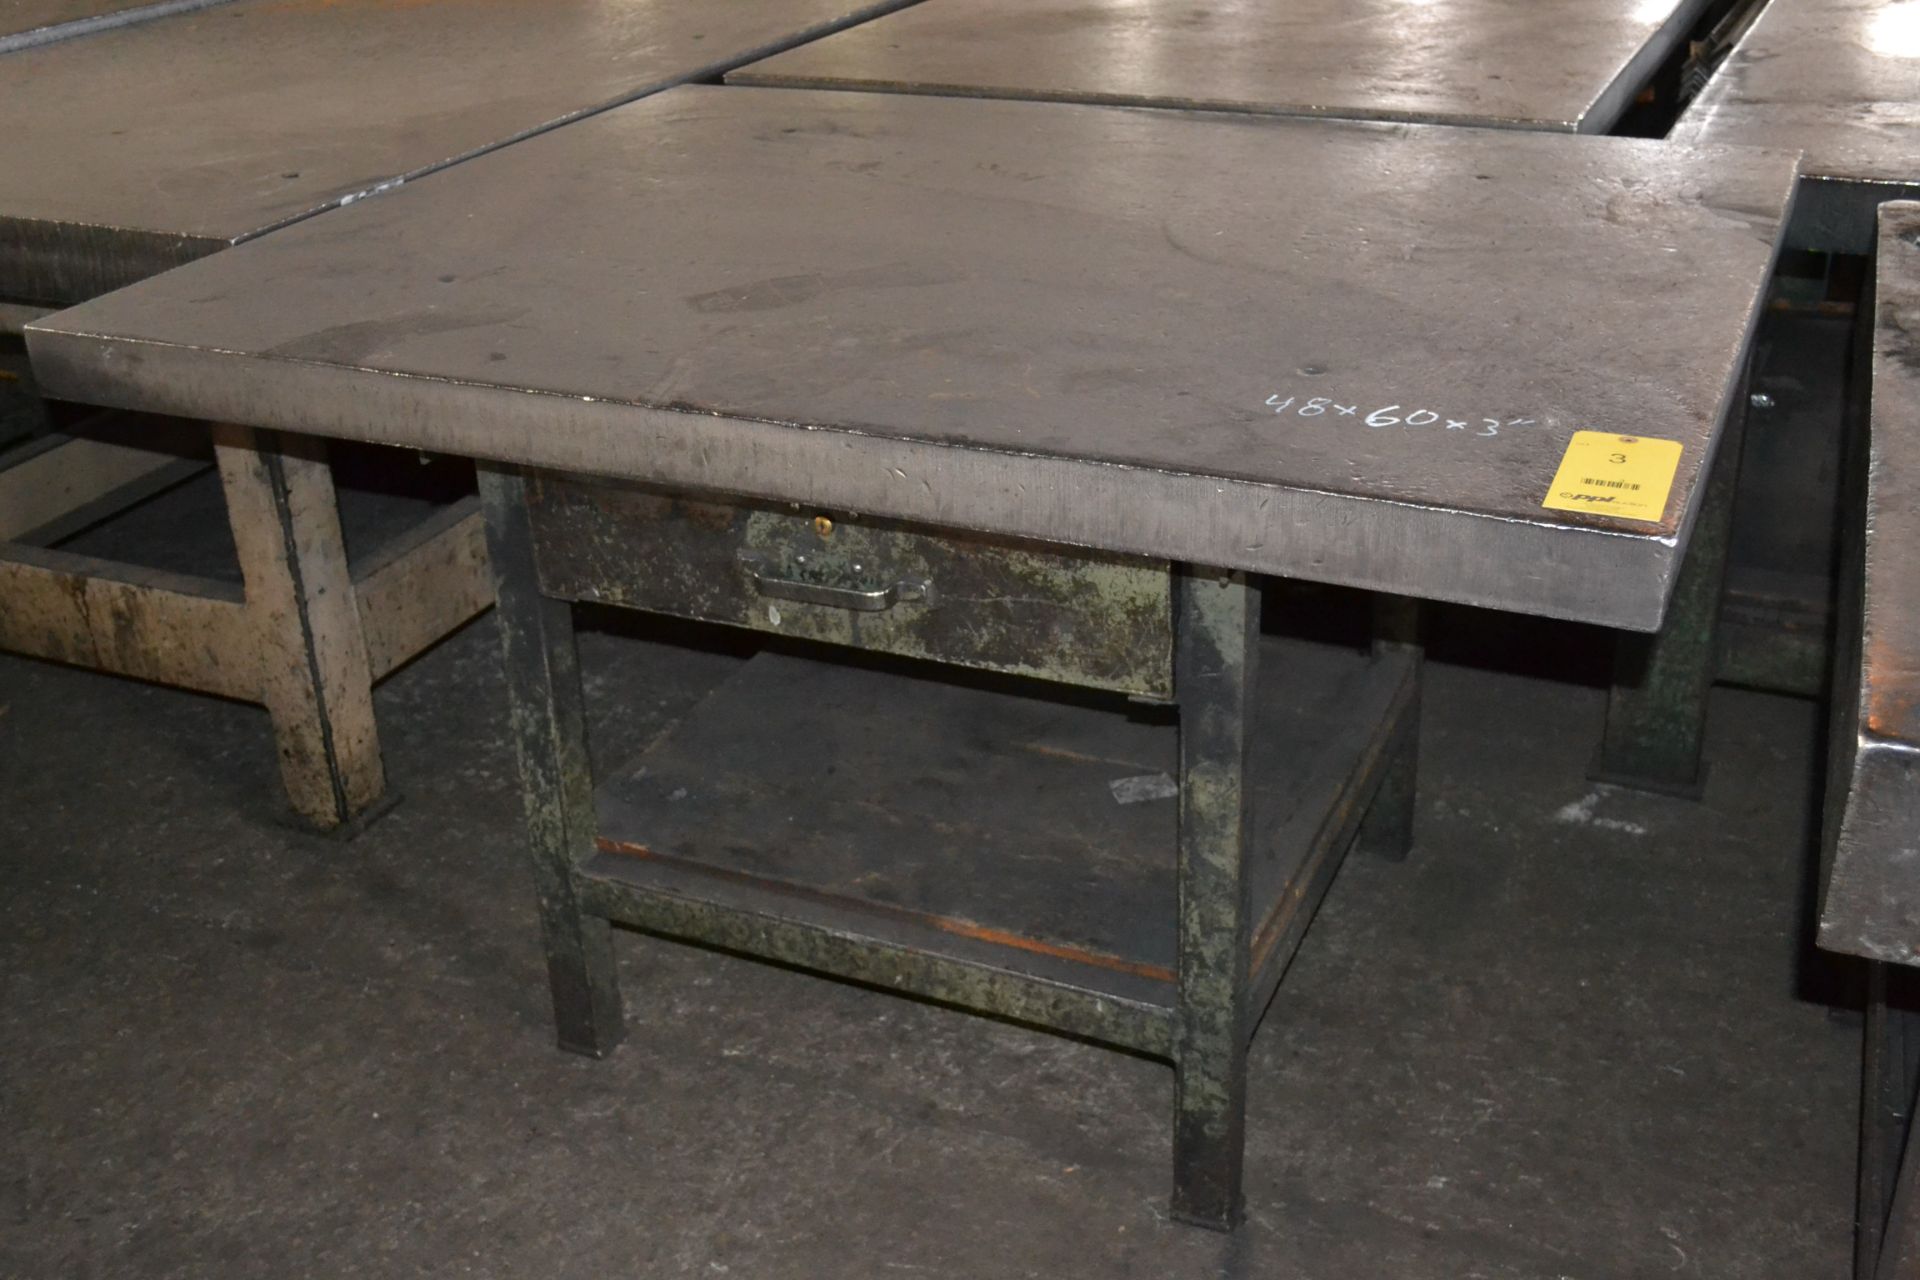 48 in. x 60 in. x 3 in. Heavy Duty Steel Fabrication Table